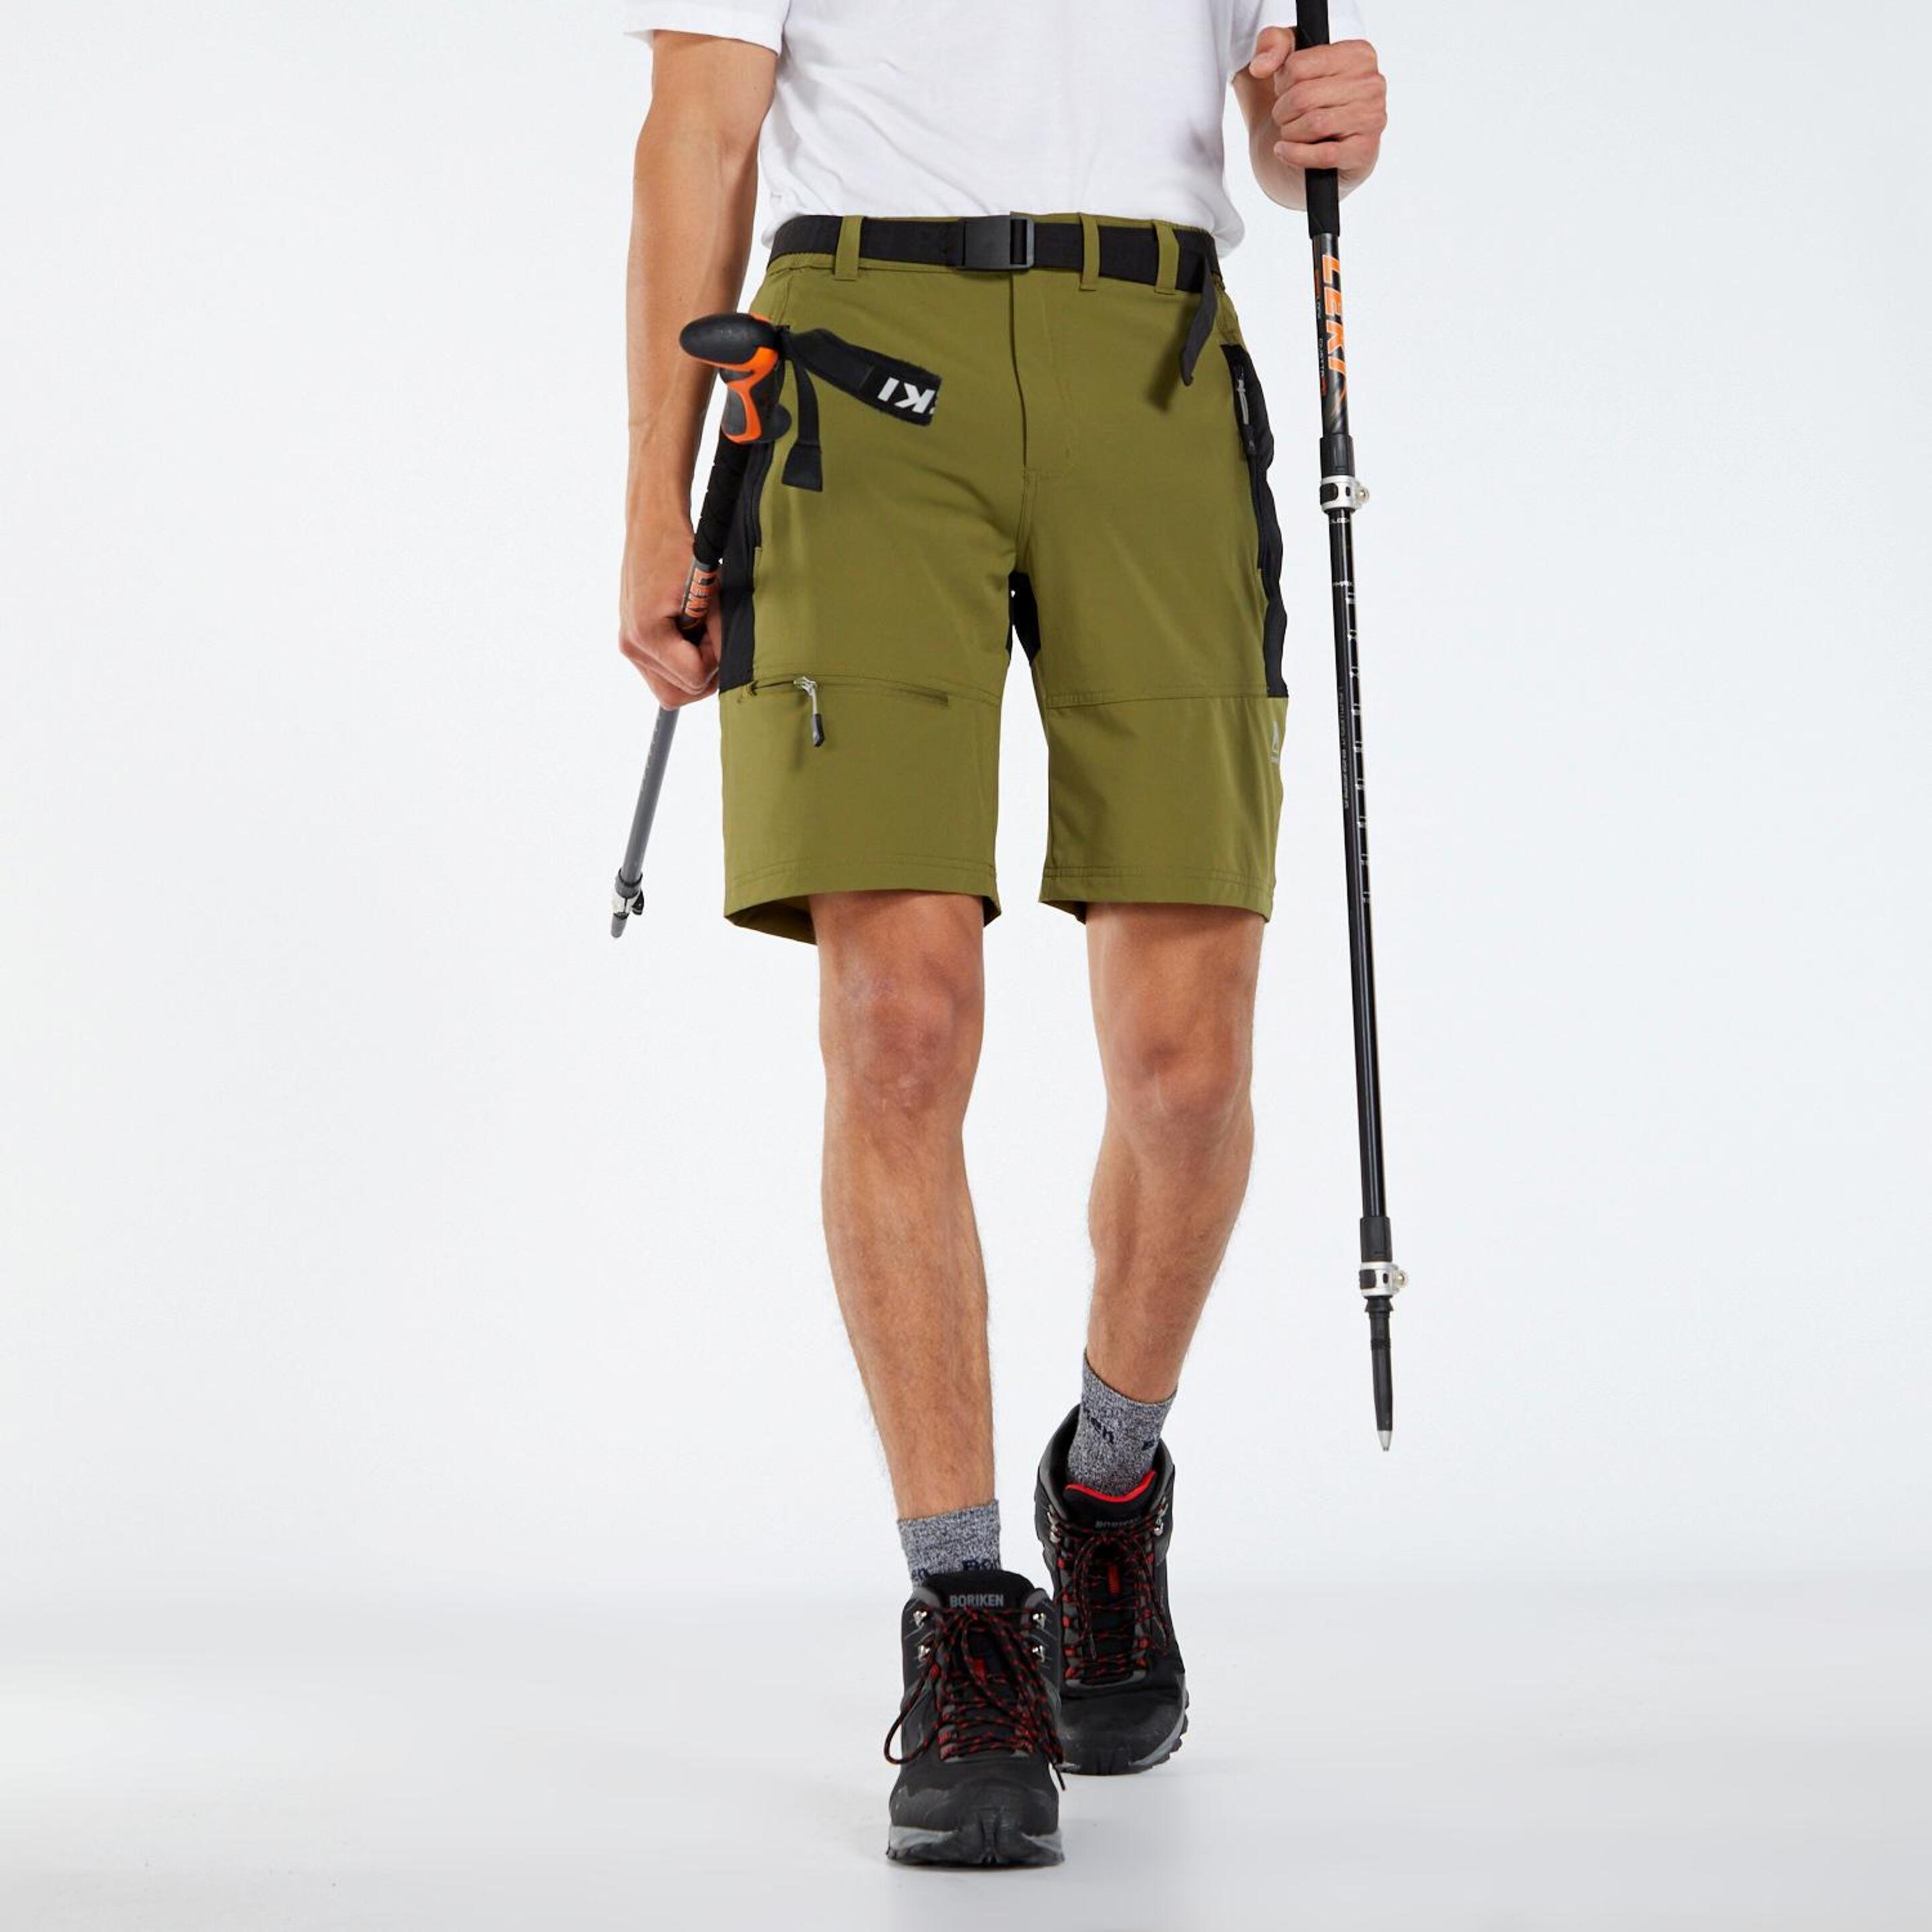 Boriken Outdoor - verde - Pantalón Trekking Hombre